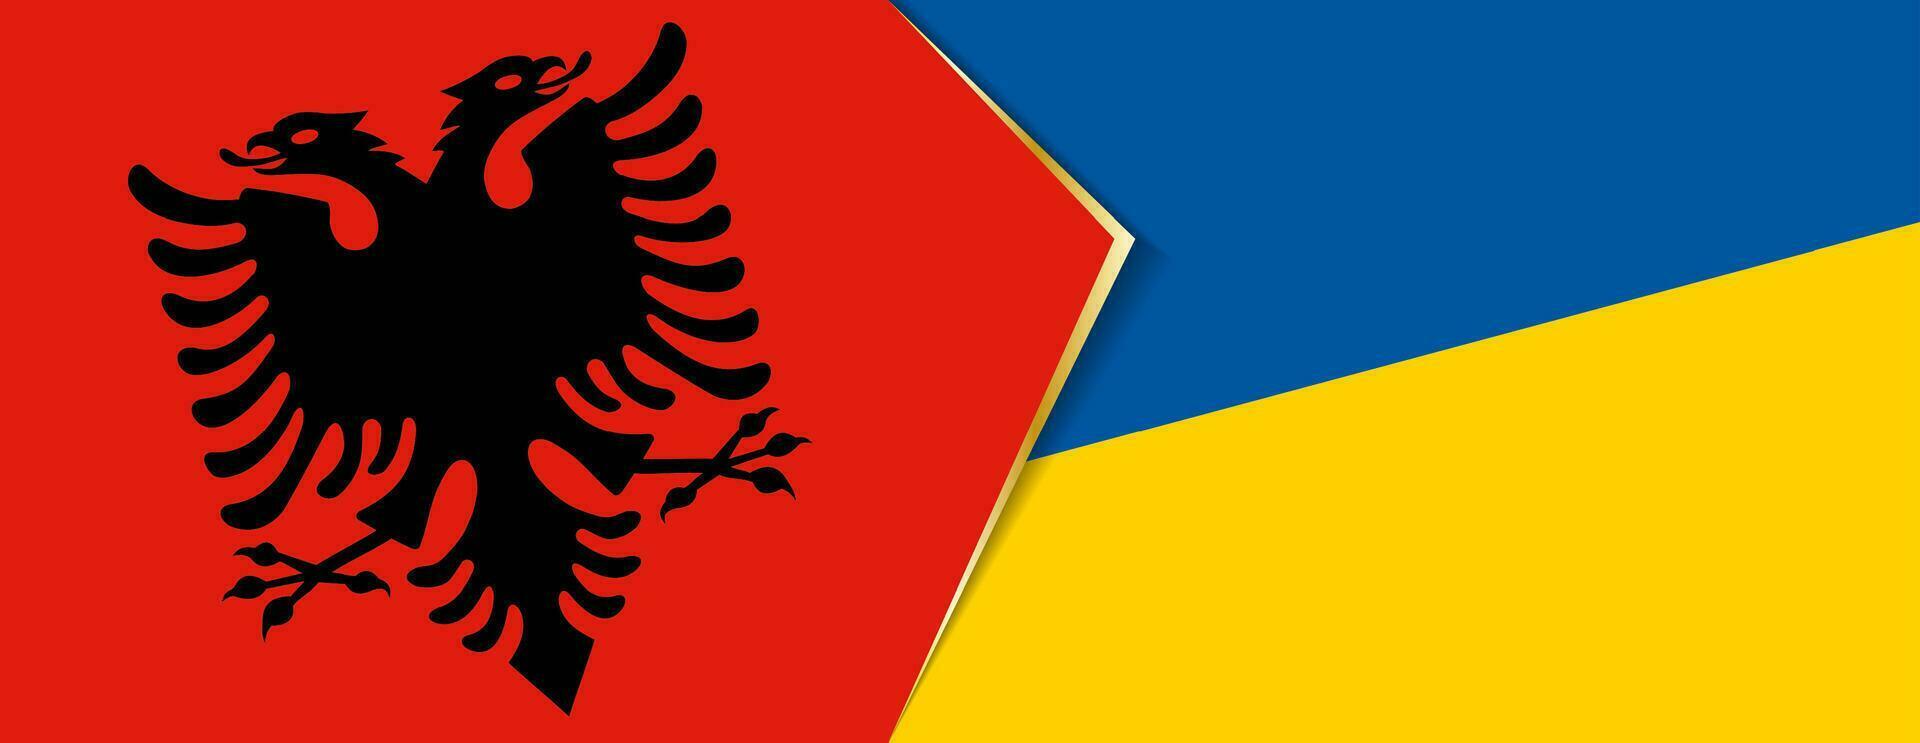 albania och ukraina flaggor, två vektor flaggor.